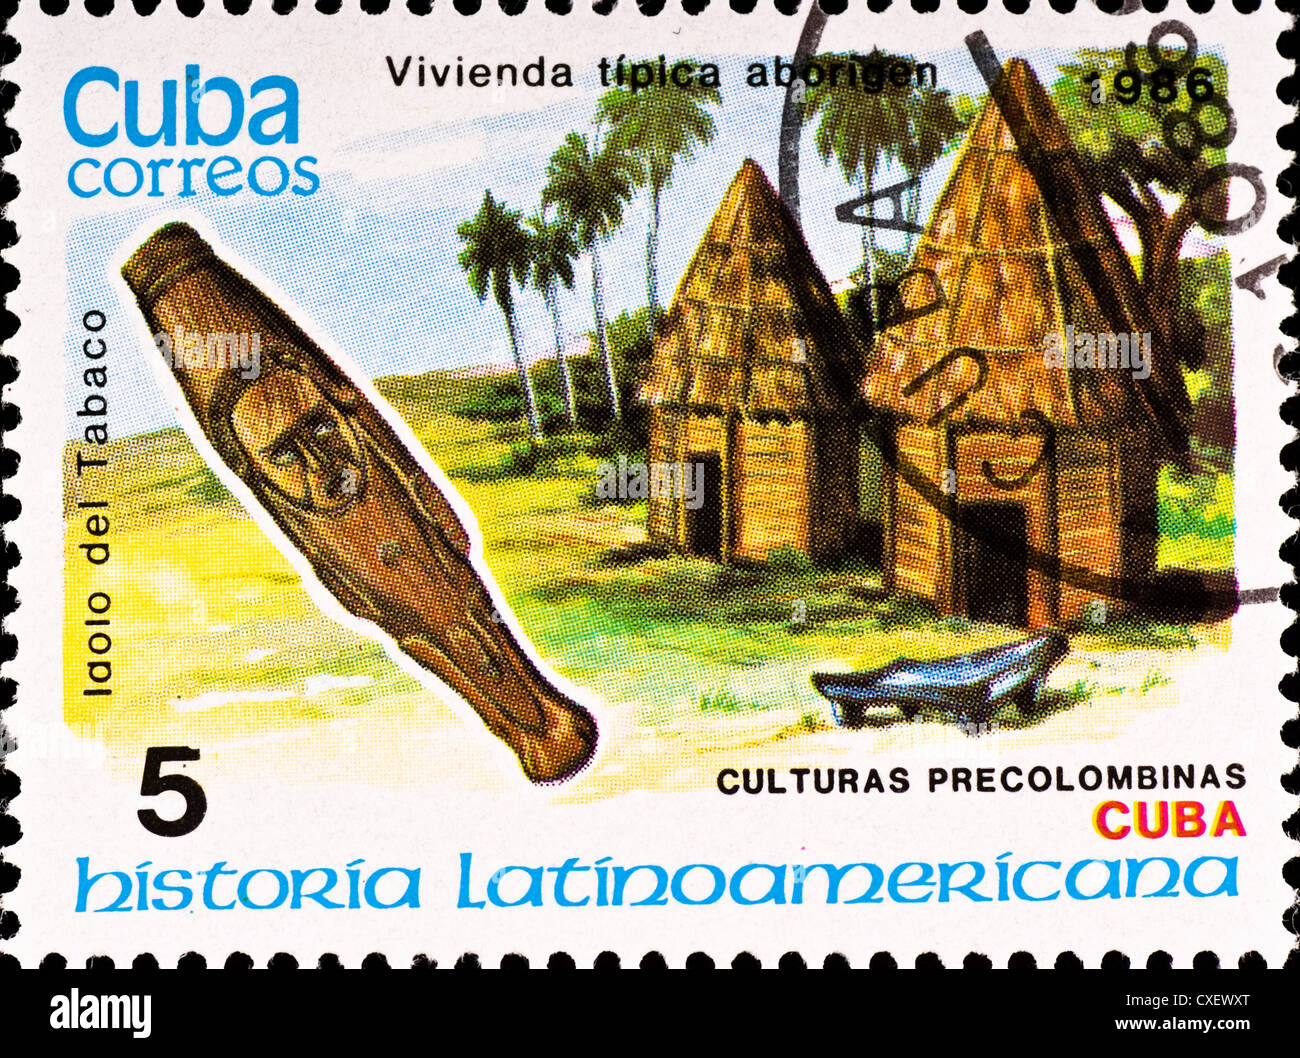 Timbre-poste par exemple montre la culture cubaine Banque D'Images